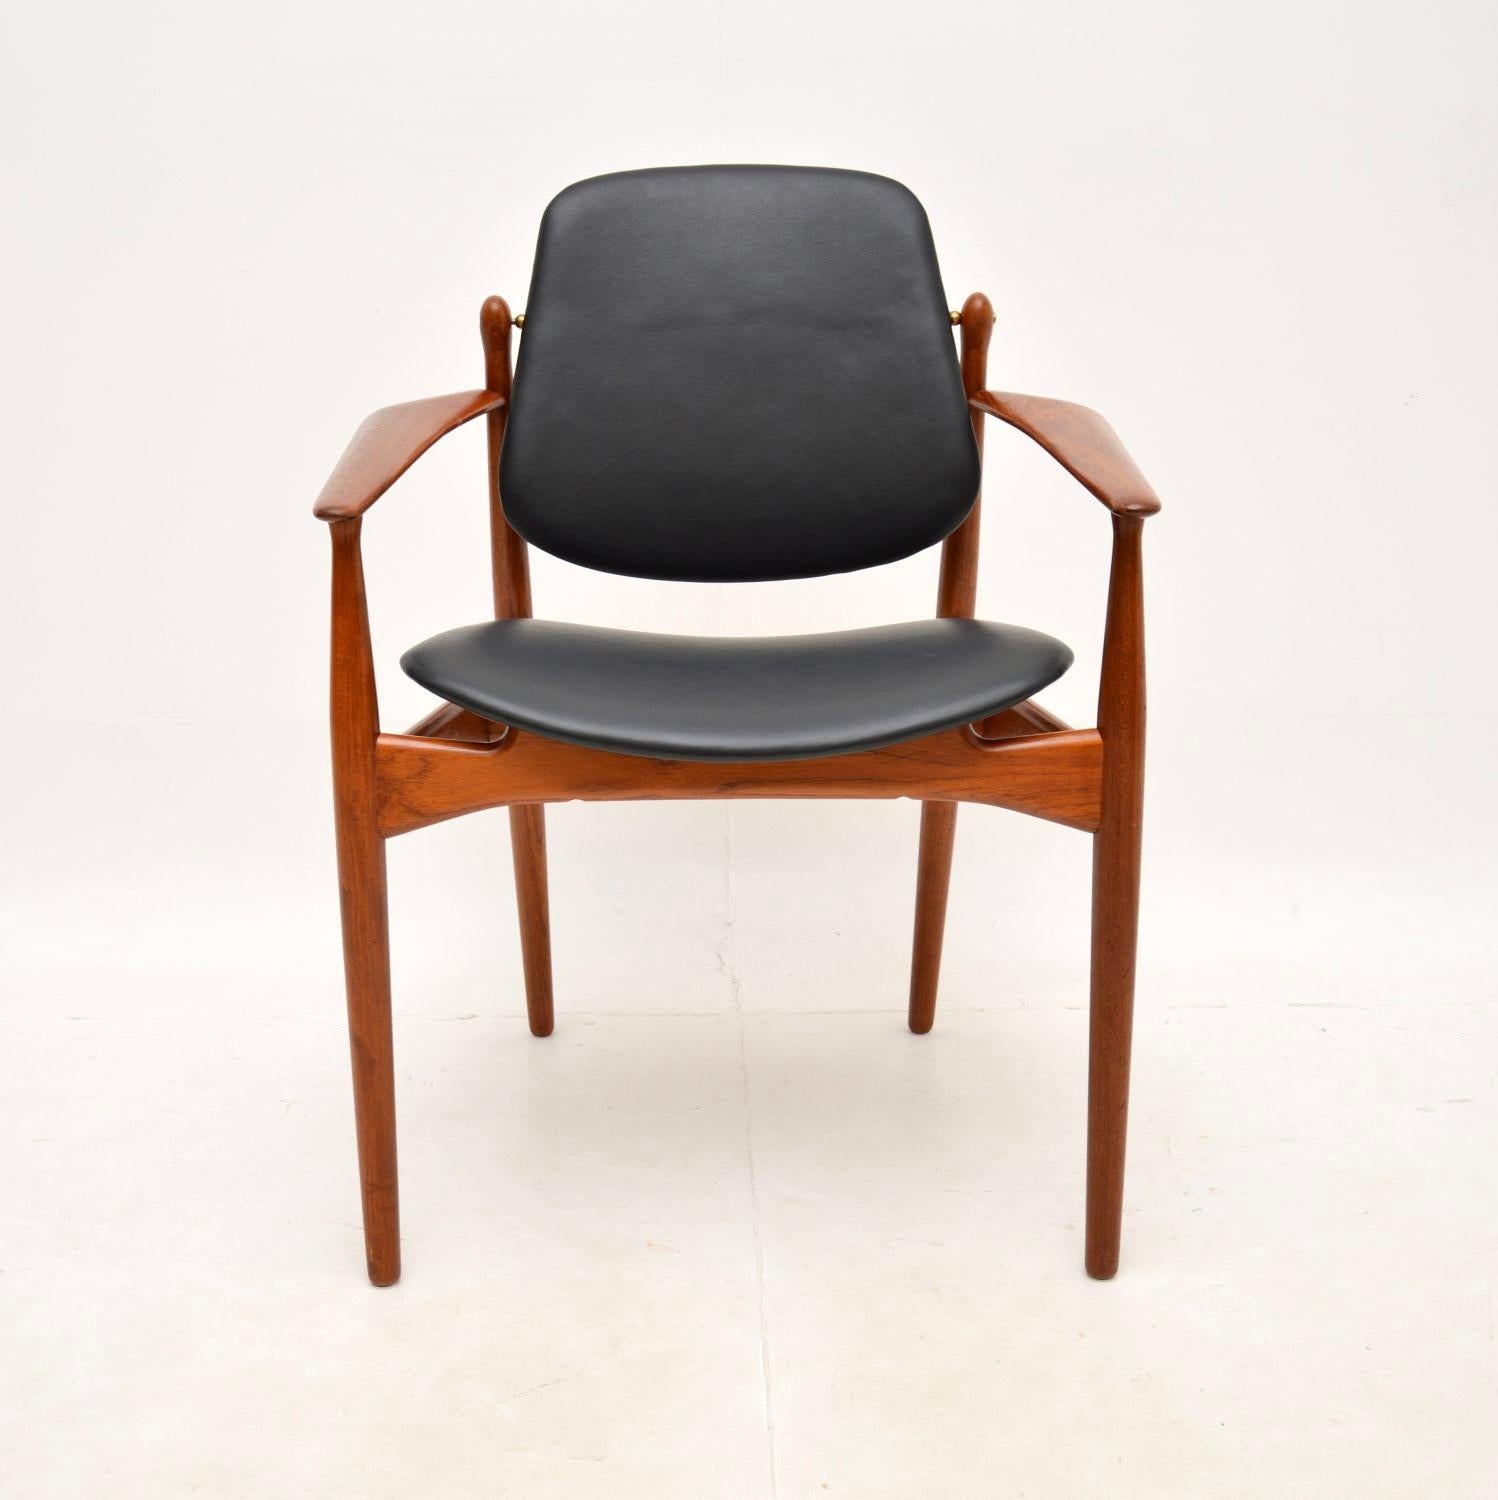 Ein schöner und ikonischer dänischer Vintage-Sessel aus Teakholz und Leder von Arne Vodder. Es wurde in Dänemark von France and Son hergestellt und stammt aus den 1960er Jahren.

Die Qualität ist hervorragend, es ist sehr gut verarbeitet und sehr